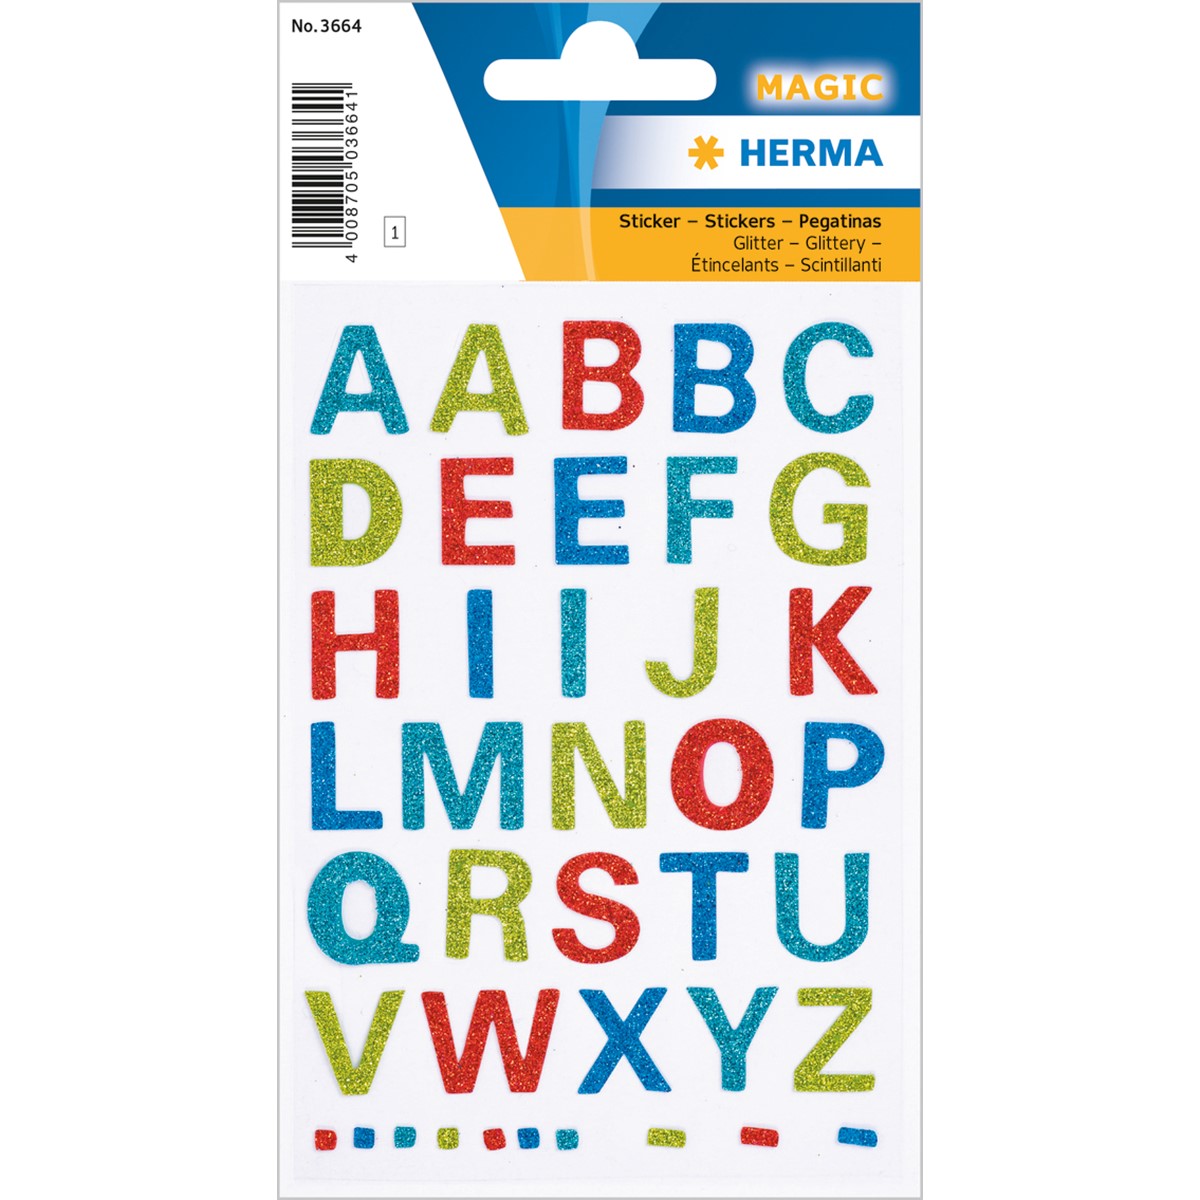 Herma - Bunte Buchstaben A - Z glitter - konturgestanzt - selbstklebend, 1 Blatt/16 Sticker